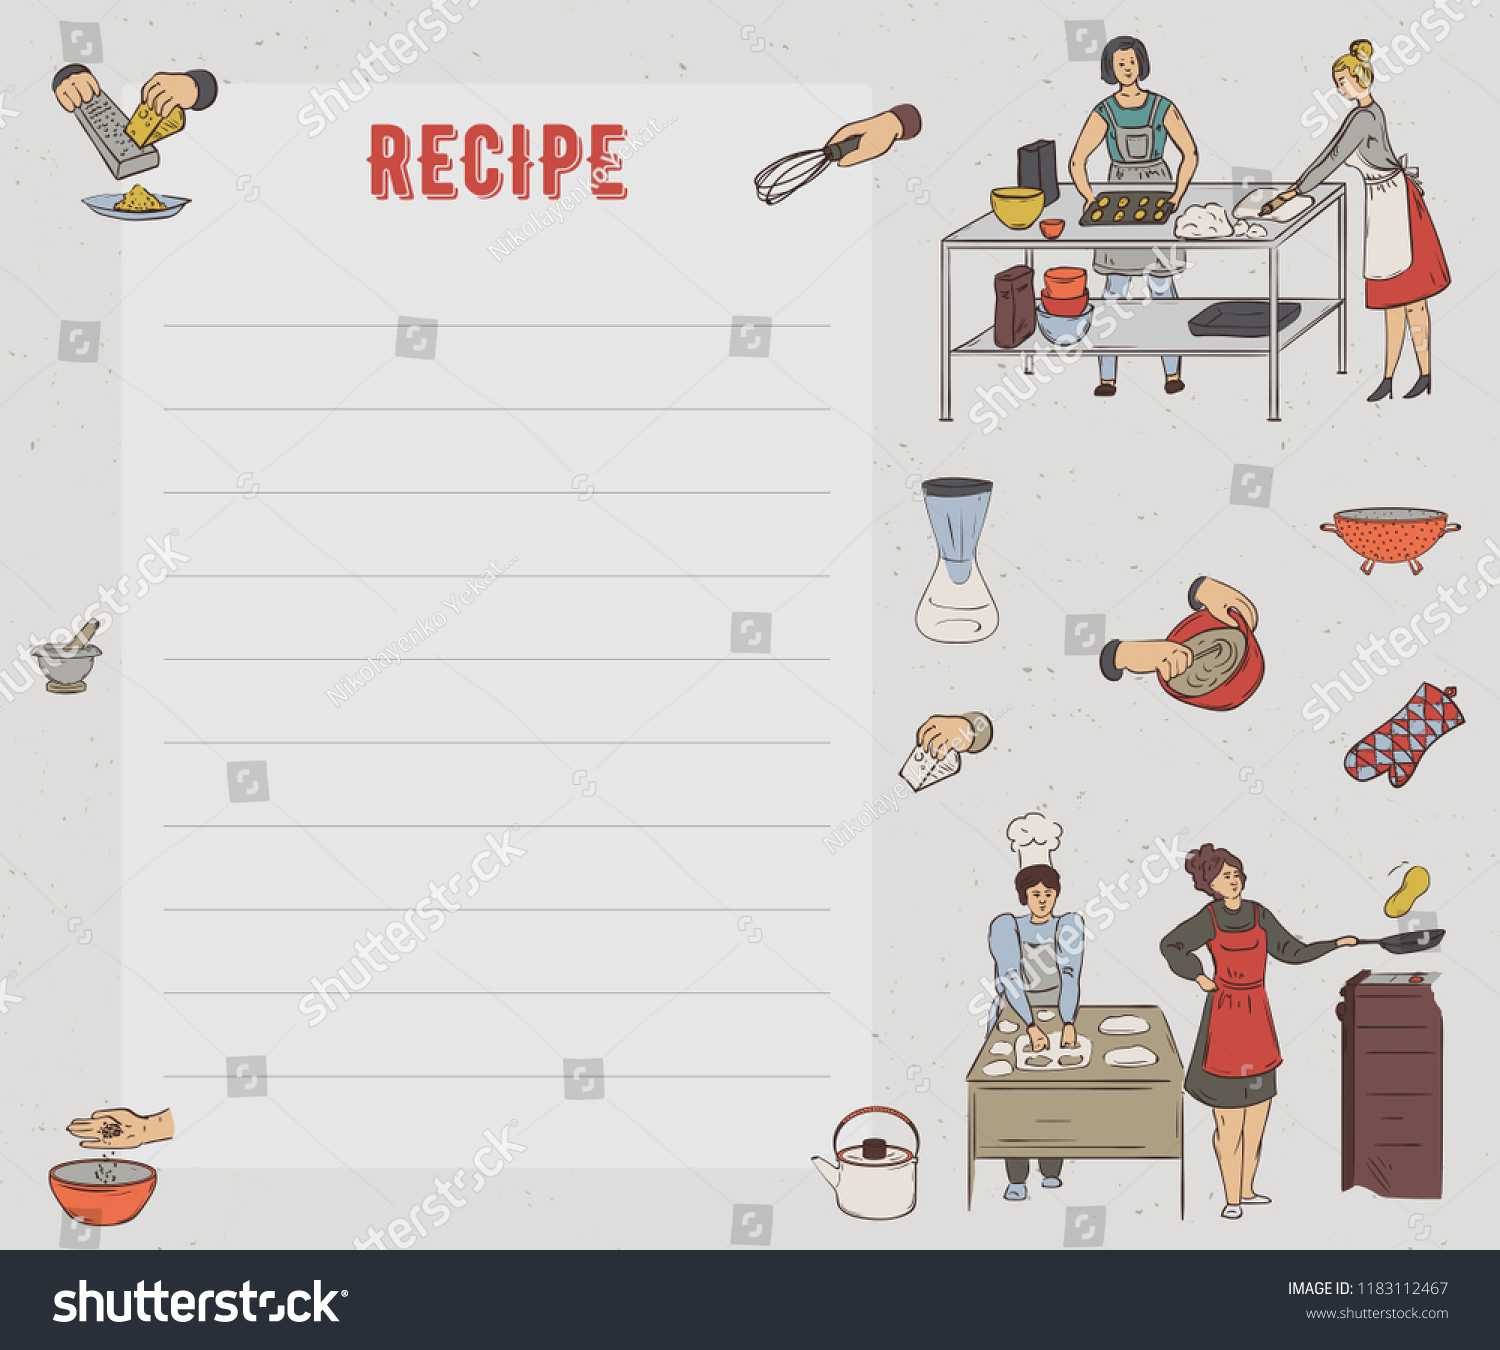 Recipe Card Cookbook Page Design Template Stock Image Intended For Recipe Card Design Template